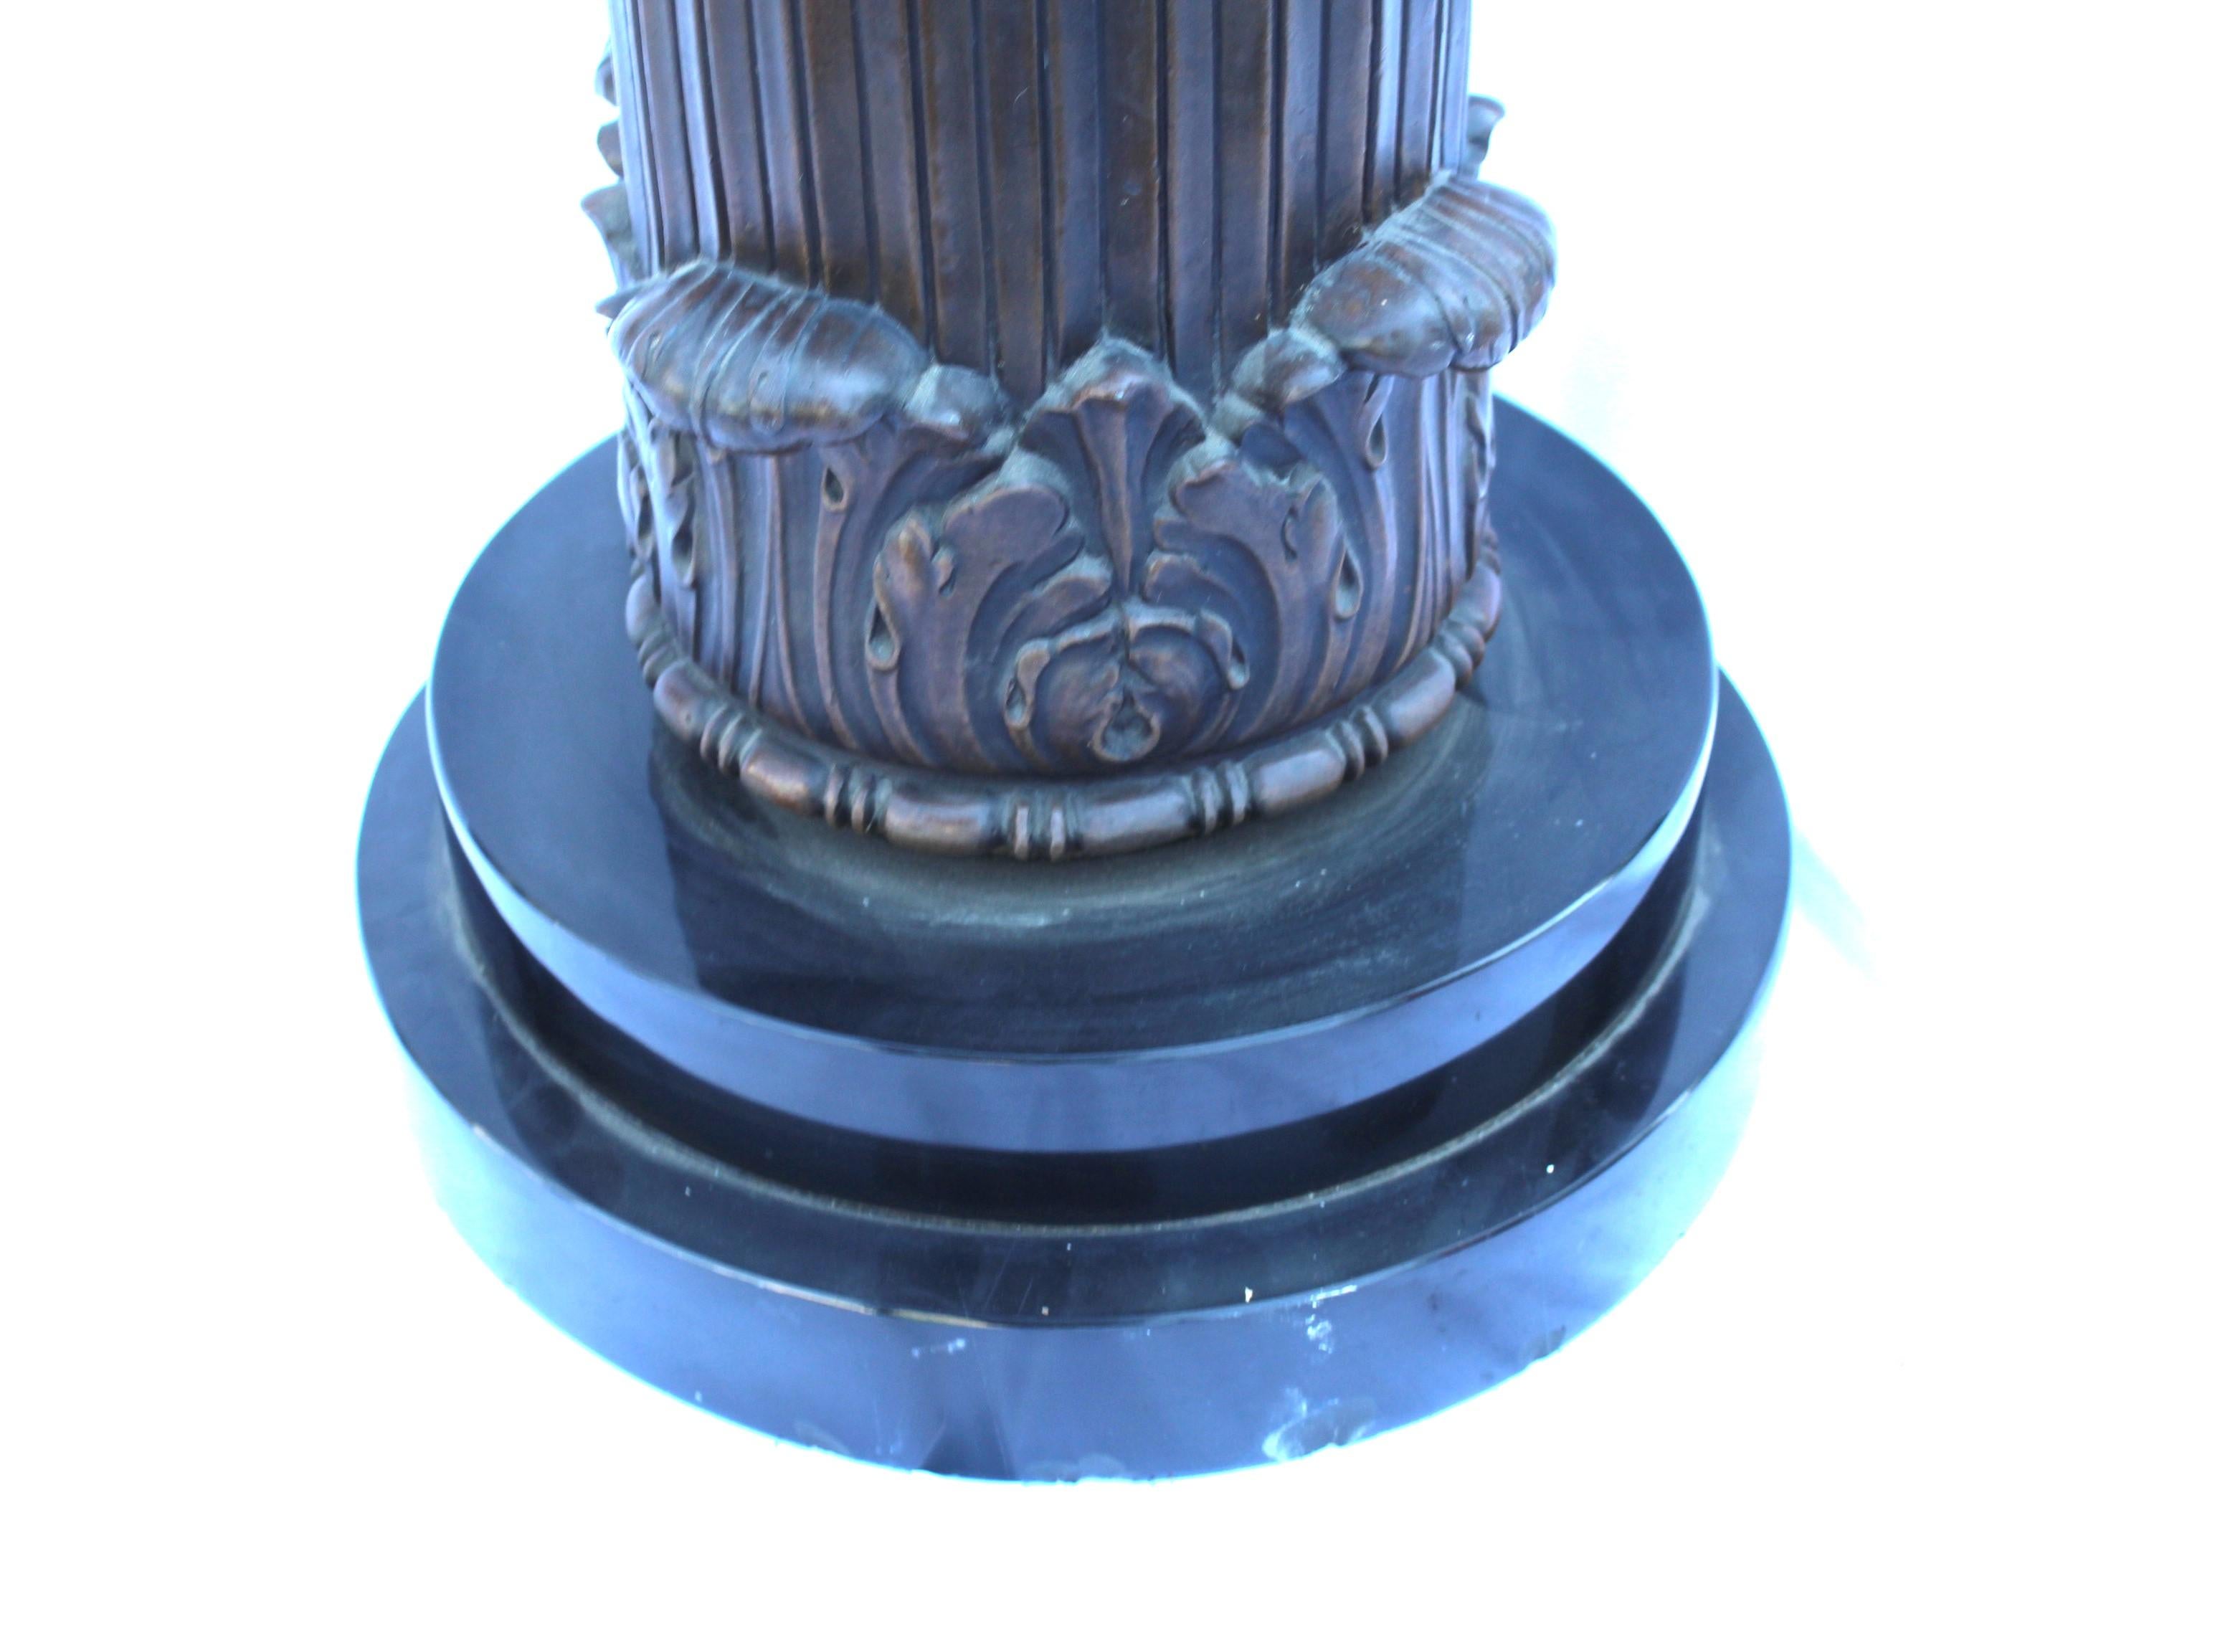 Un piédestal au design unique, fabriqué à partir d'une fonte de bronze à la cire perdue, avec une finition en bronze moyen.  Le marbre du dessus a un diamètre de 16